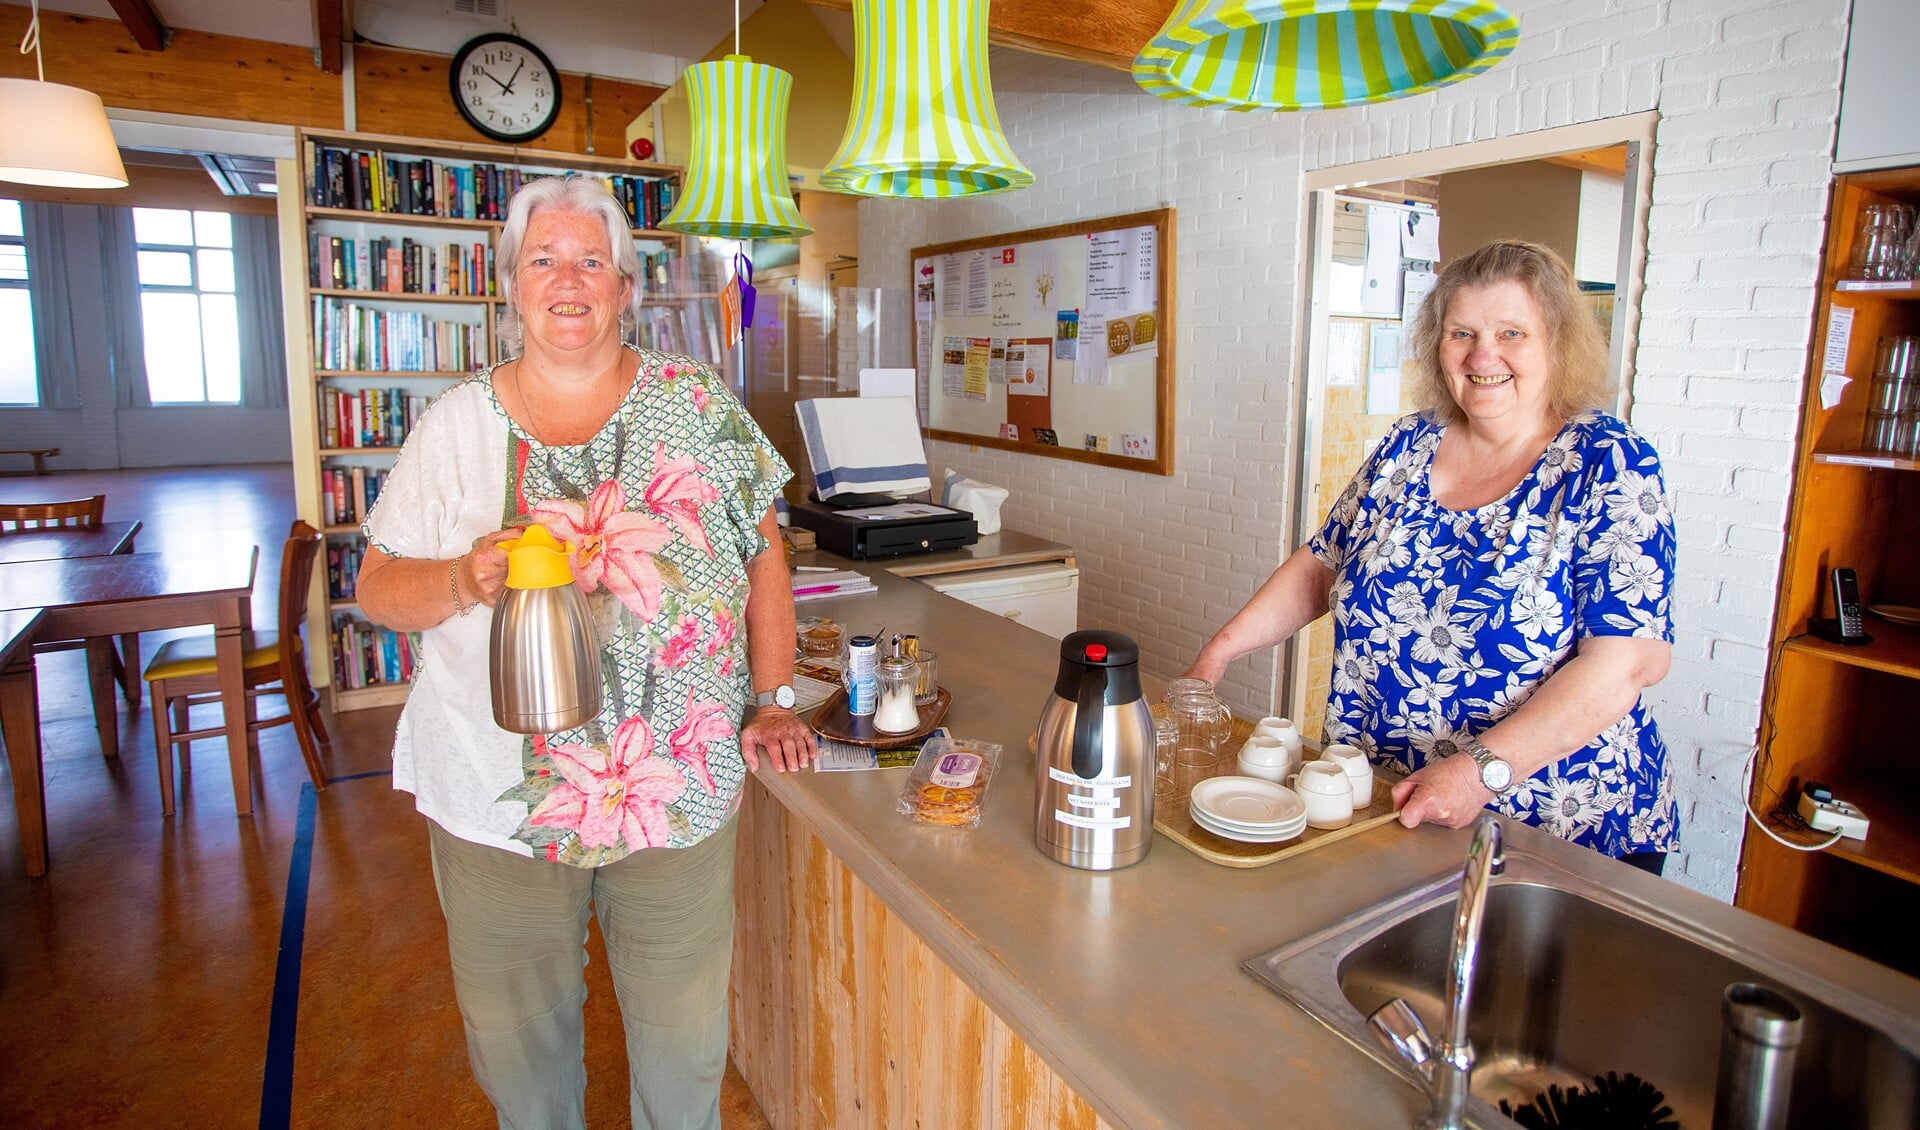 De gastvrouwen van 't Vurônger zien uit naar nieuwe bezoekers van de koffieochtend